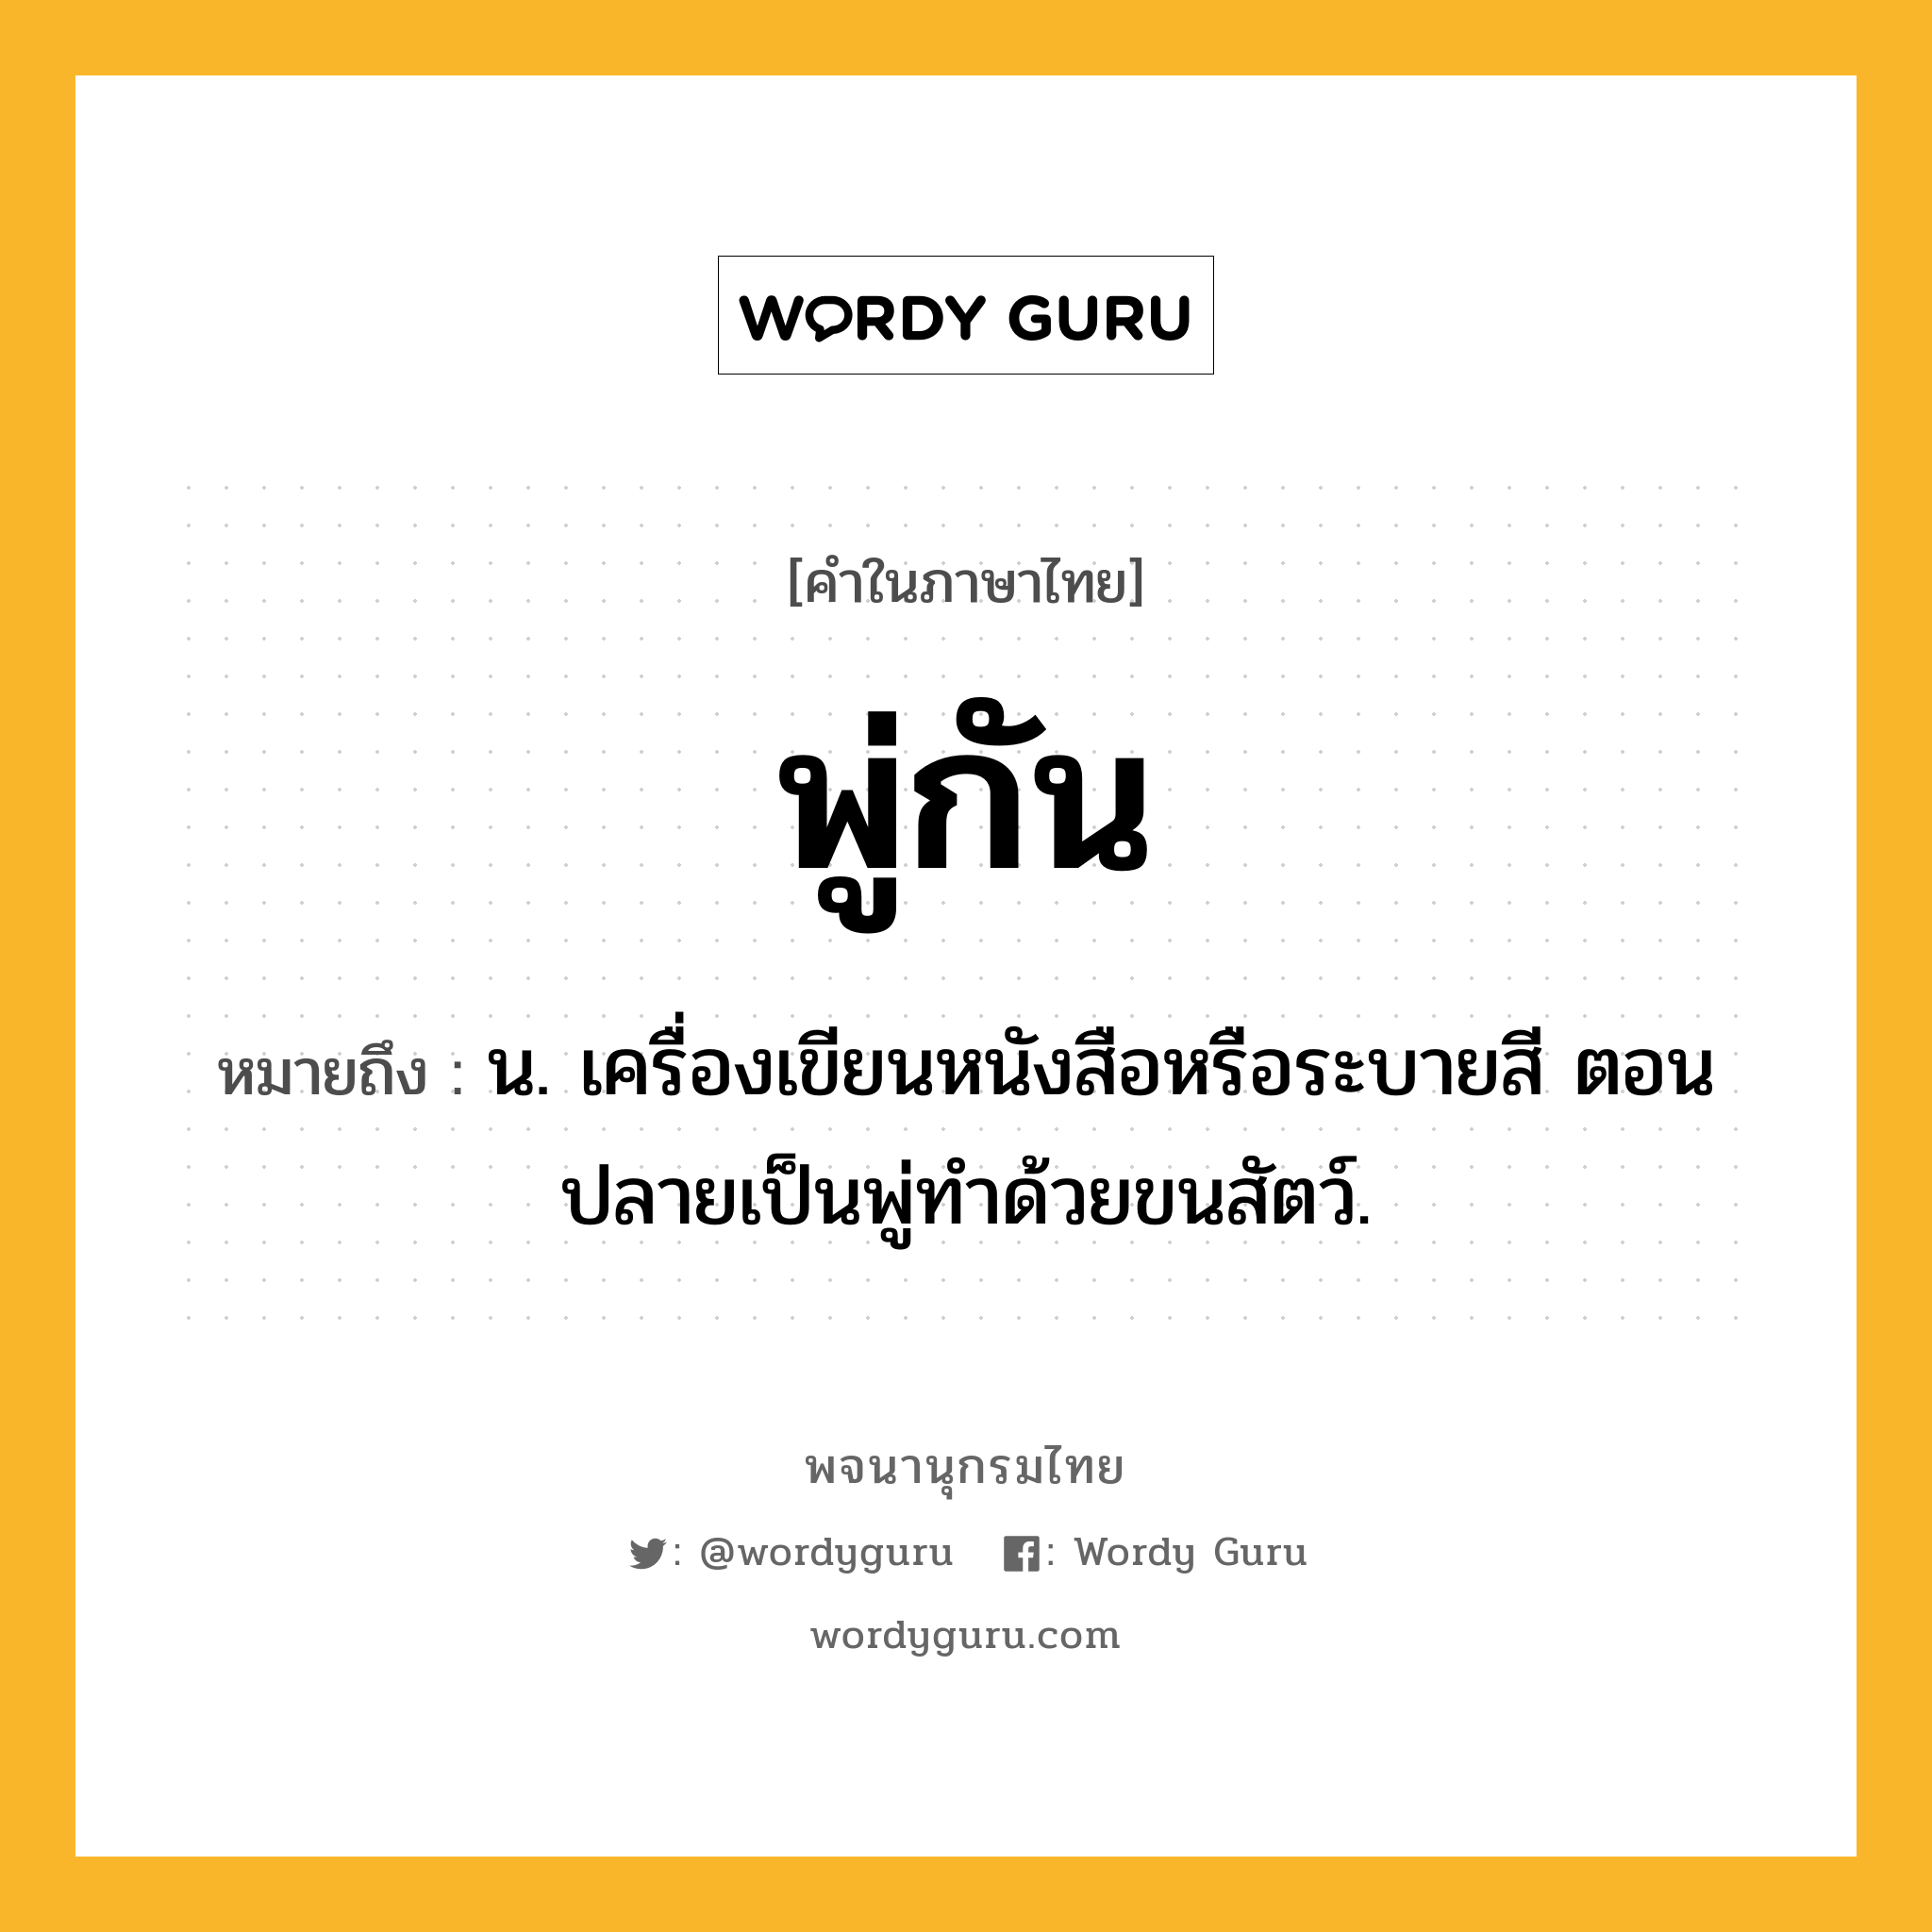 พู่กัน หมายถึงอะไร?, คำในภาษาไทย พู่กัน หมายถึง น. เครื่องเขียนหนังสือหรือระบายสี ตอนปลายเป็นพู่ทำด้วยขนสัตว์.